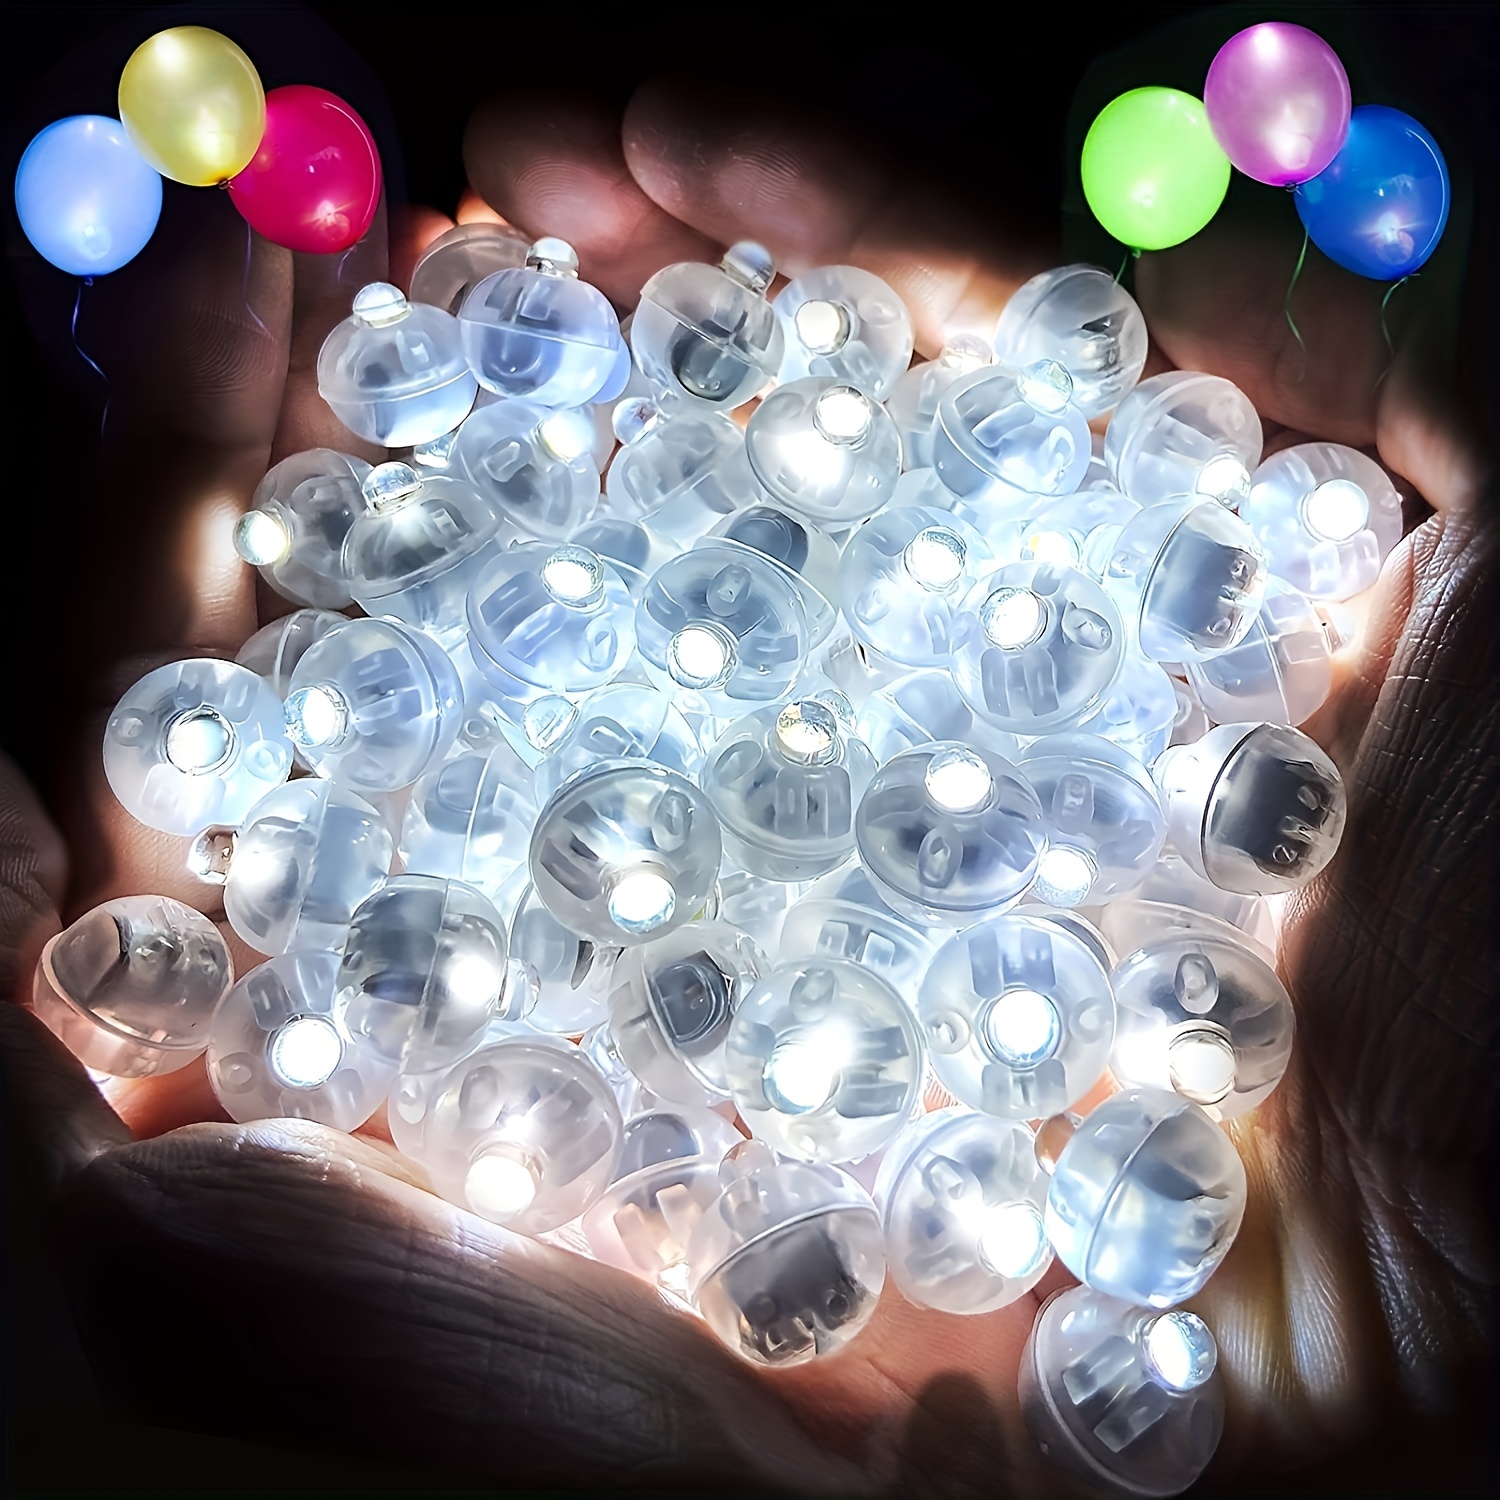  Paquete de 10 globos LED, globos de luz transparente de 20  pulgadas con palos, globos de neón coloridos que brillan en la oscuridad,  juegos de globos de burbujas de helio para